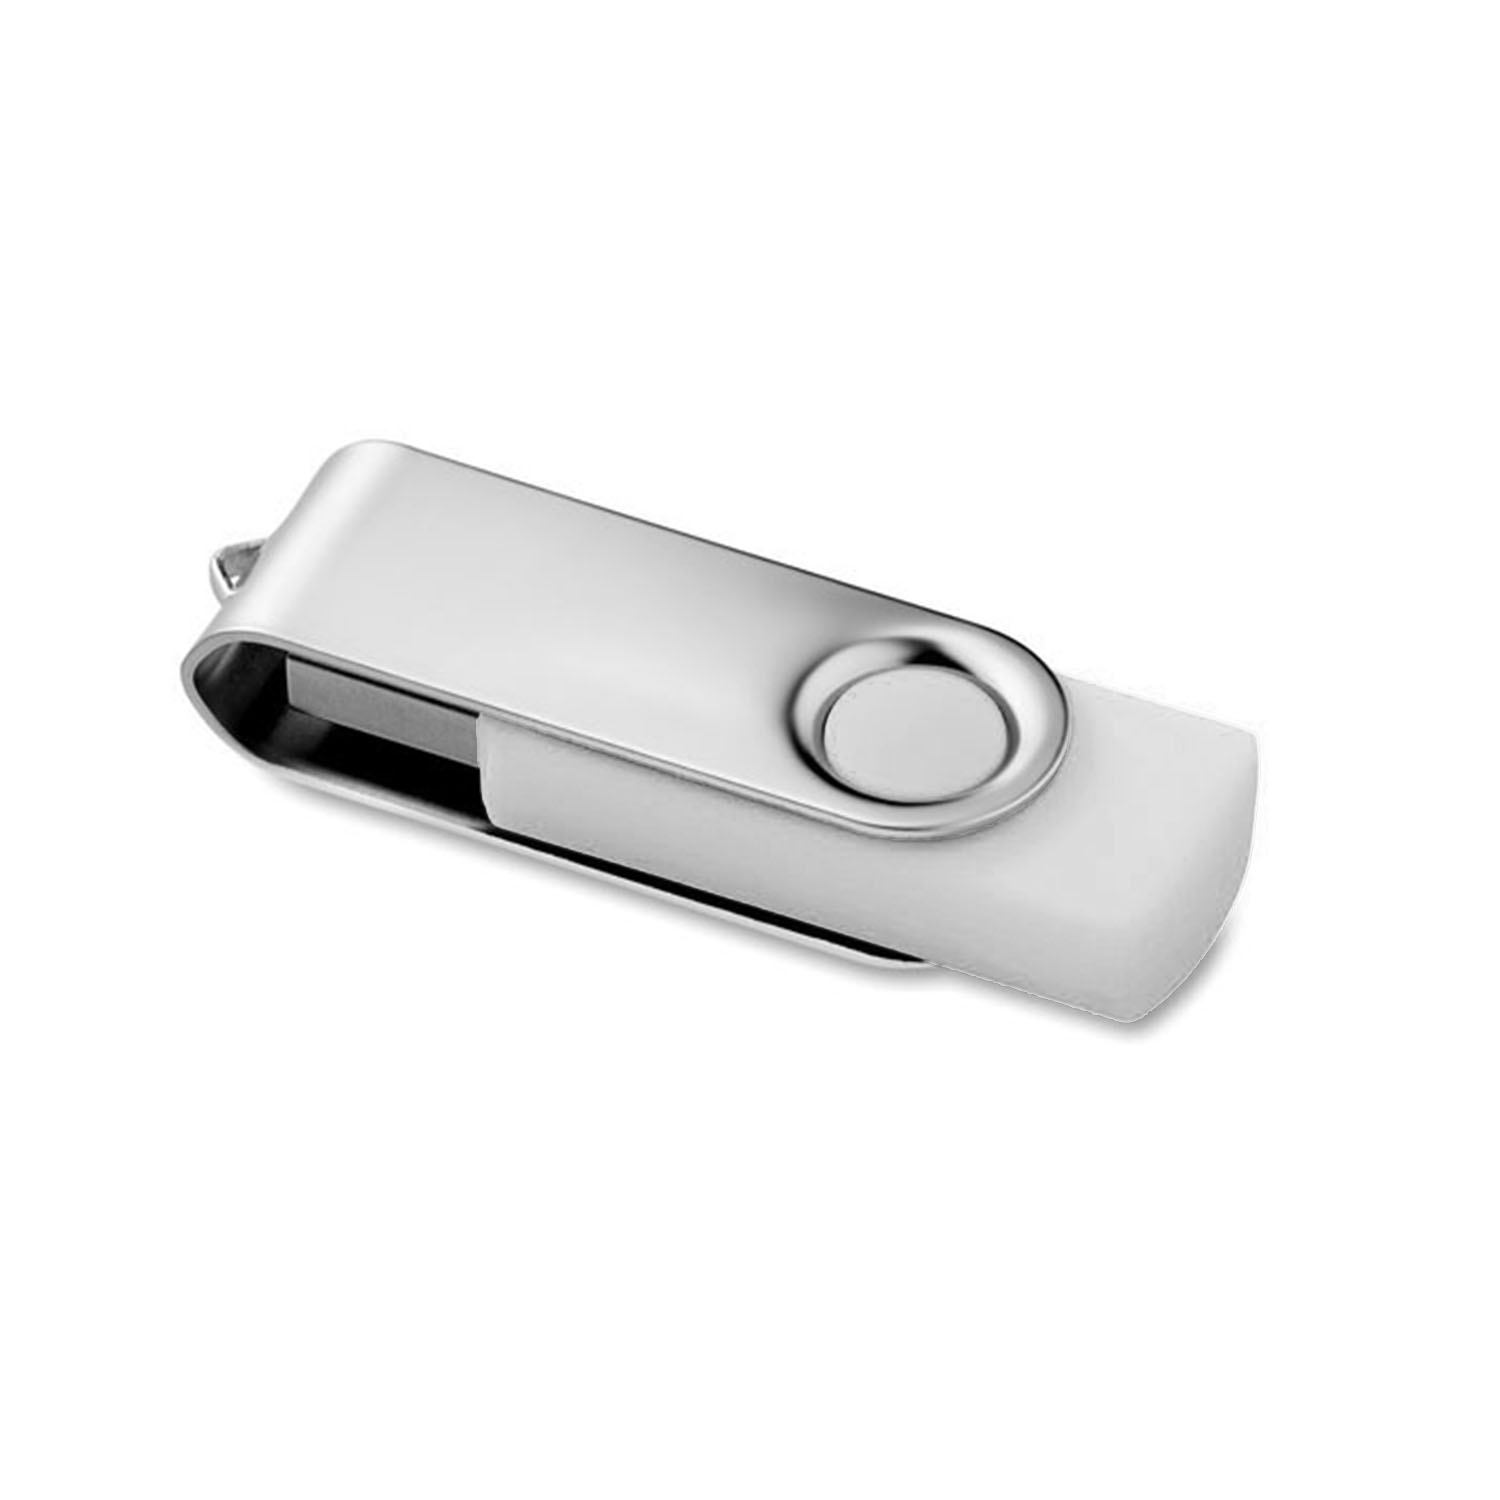 LOT 50 CLÉS USB PERSONNALISÉES 'TWISTER' 4GO - EXPEDITION EXPRESS 72H